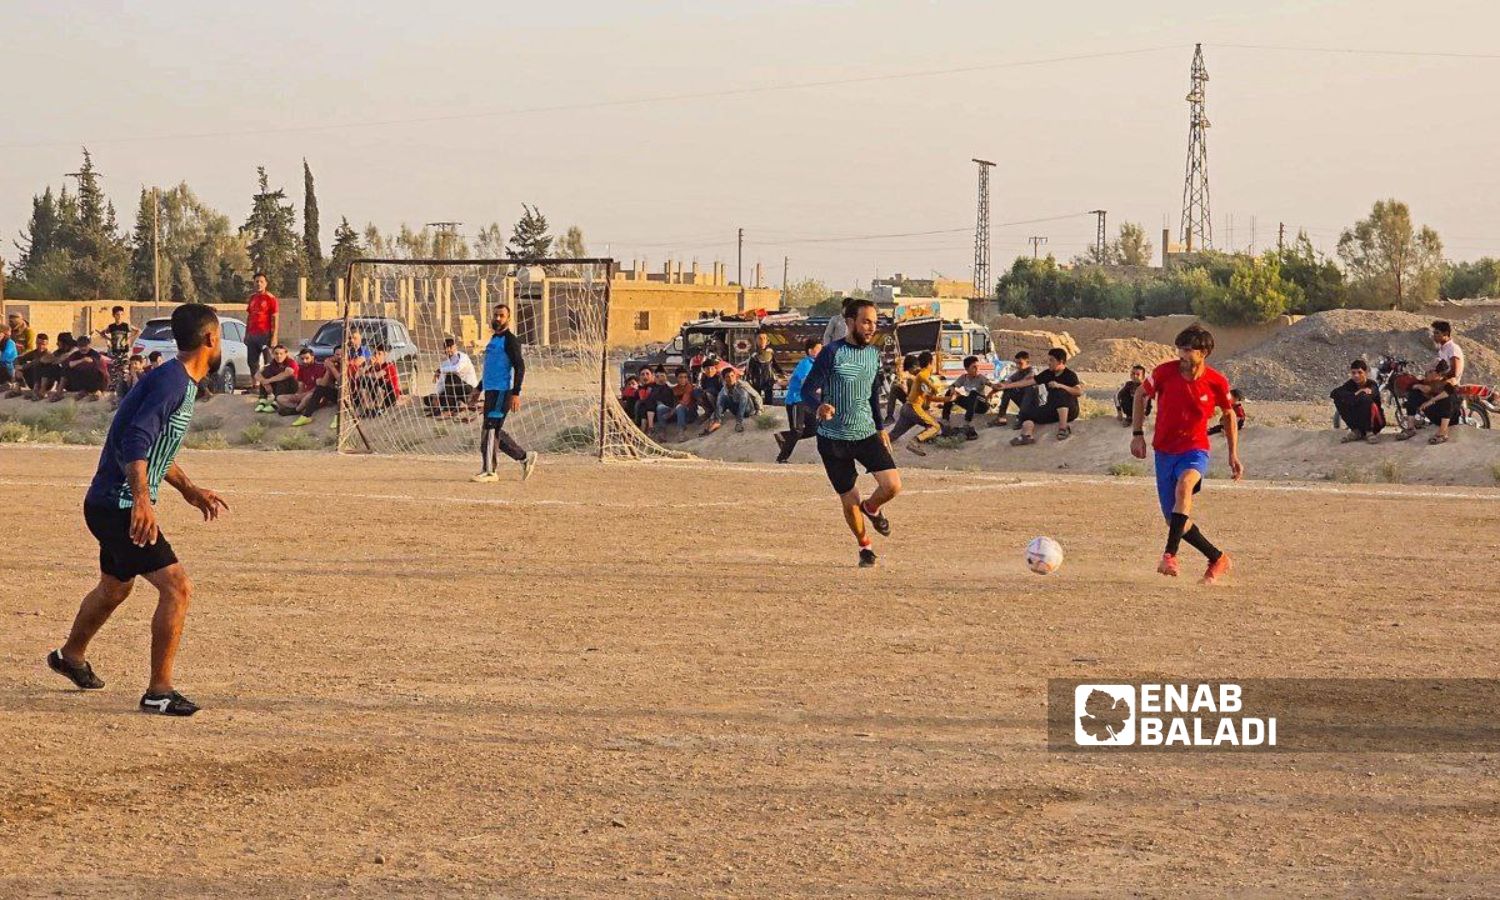 From the opening match of the Jadid al-Baggara league between the al-Basira and Jadid al-Baggara teams, east of Deir Ezzor - July 29, 2023 (Enab Baladi)